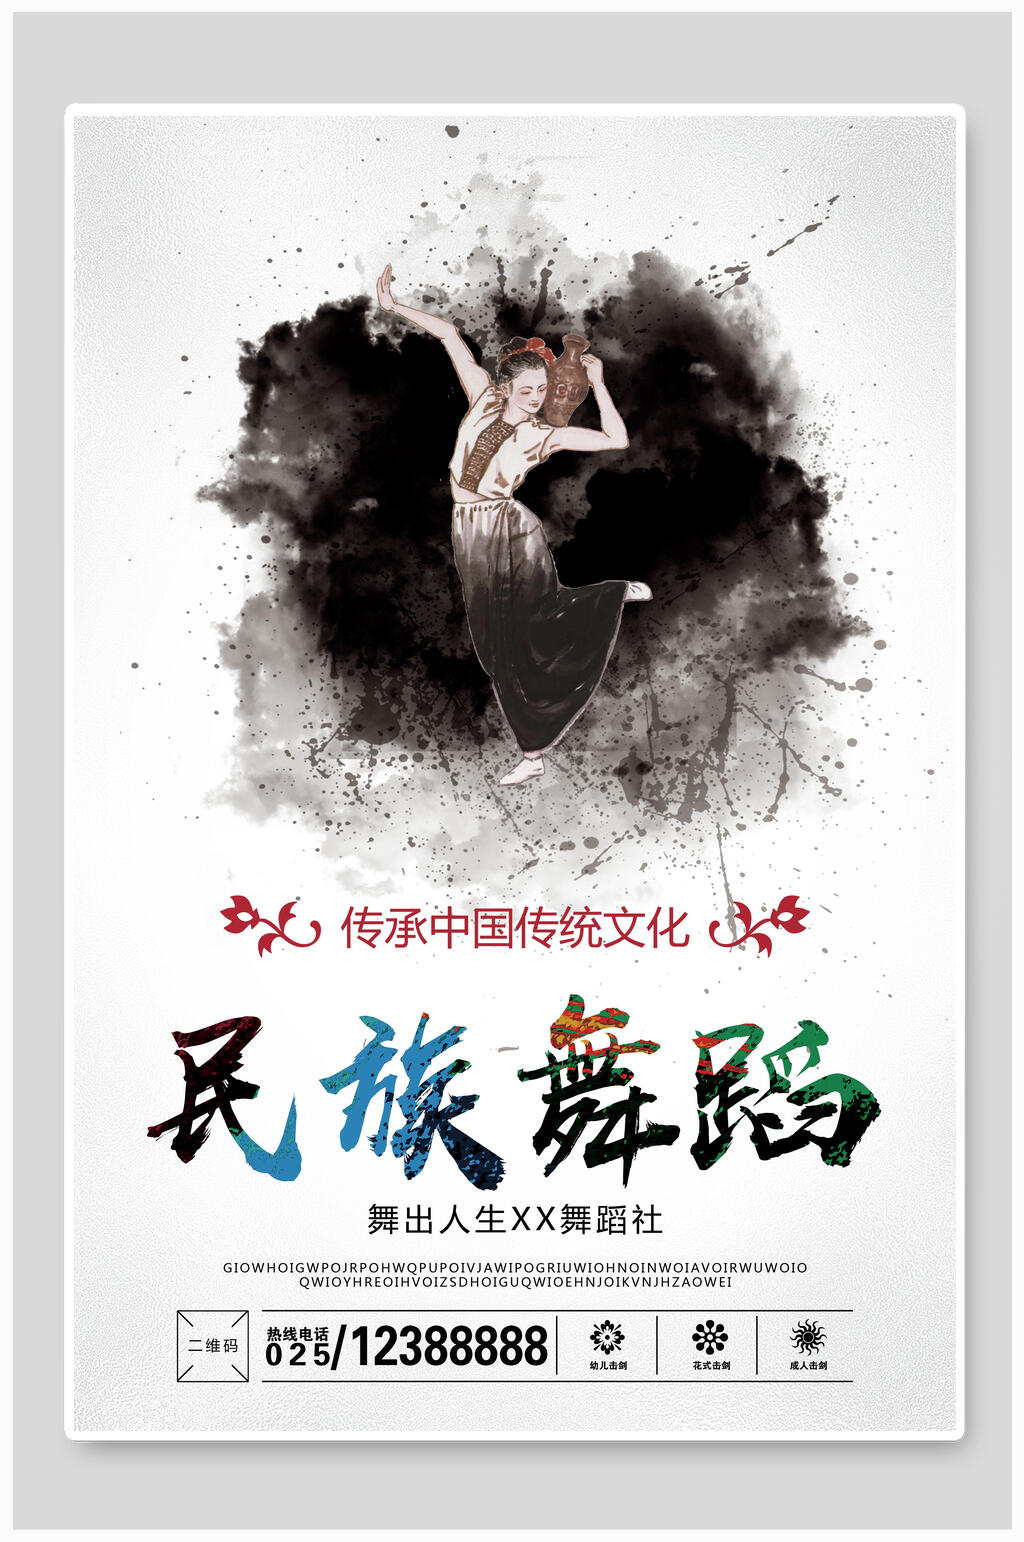 风民族舞舞蹈培训班招生报名海报中国风民族舞宣传海报民族舞蹈培训